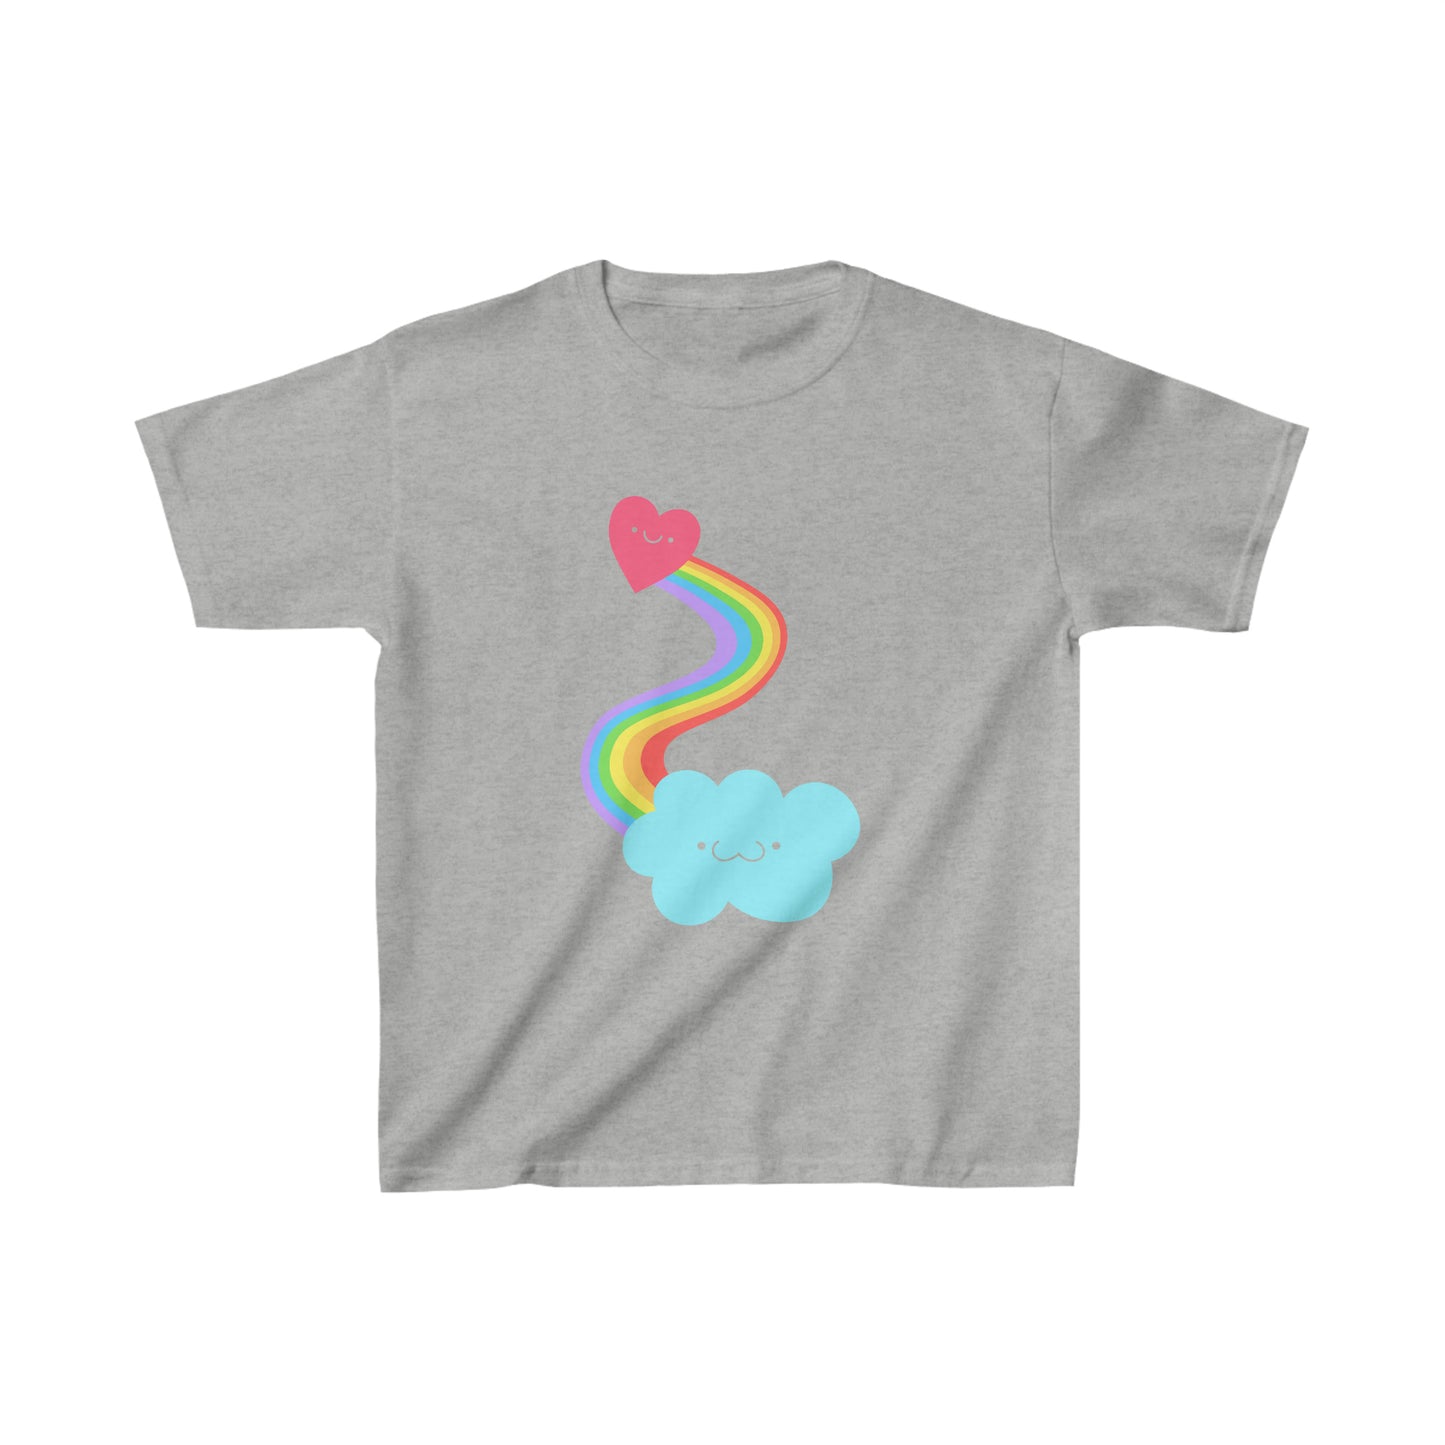 Heart + Rainbow + Cloud T-shirt Kids